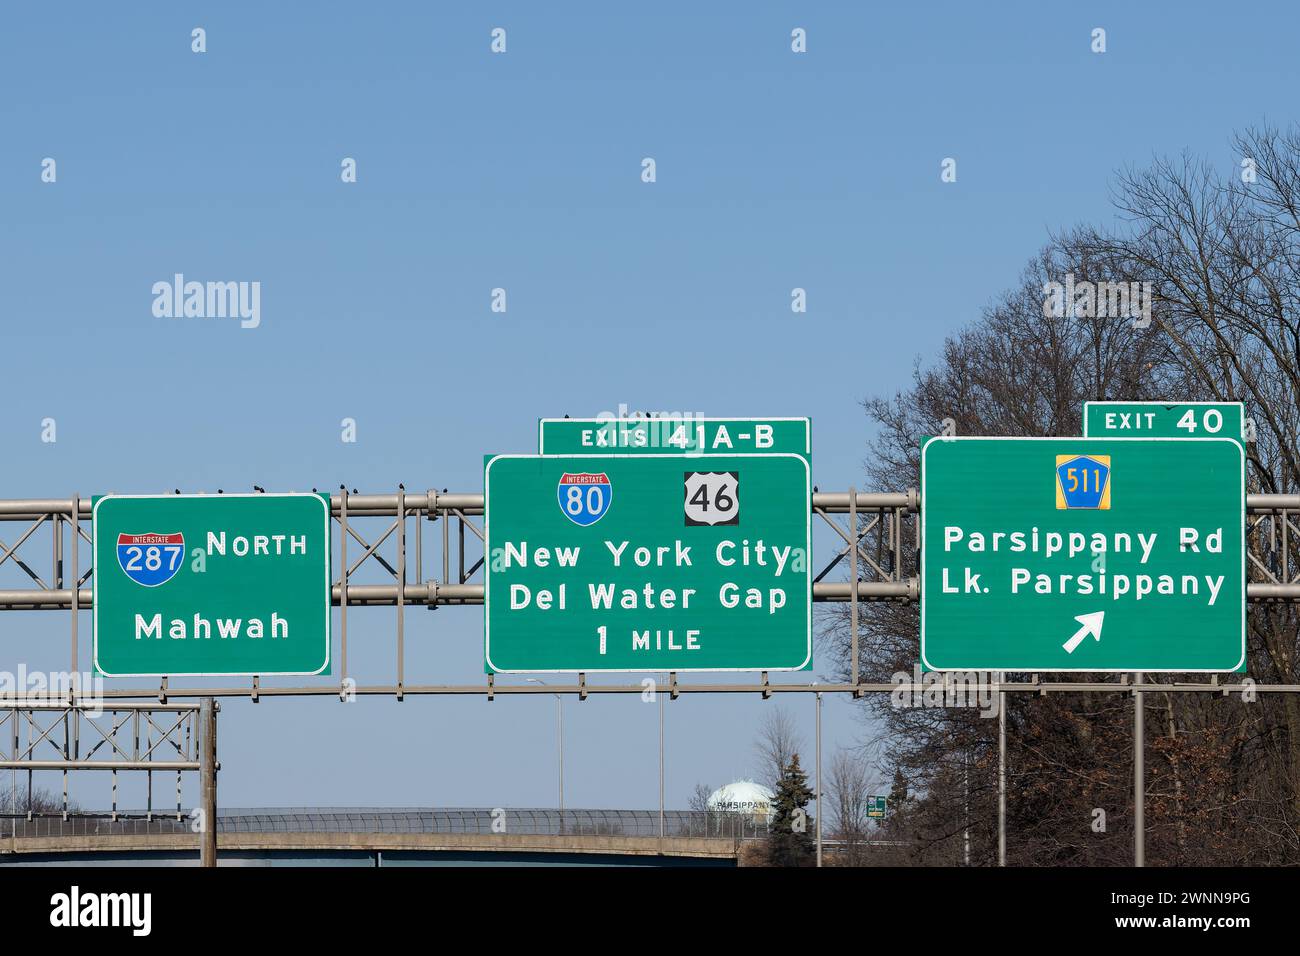 Panneaux de sortie de l'autoroute pour l'Interstate 287 North vers Mahwah, New Jersey, l'Interstate 80 et l'US-46 vers New York City et Delaware Water Gap, et le comté Banque D'Images